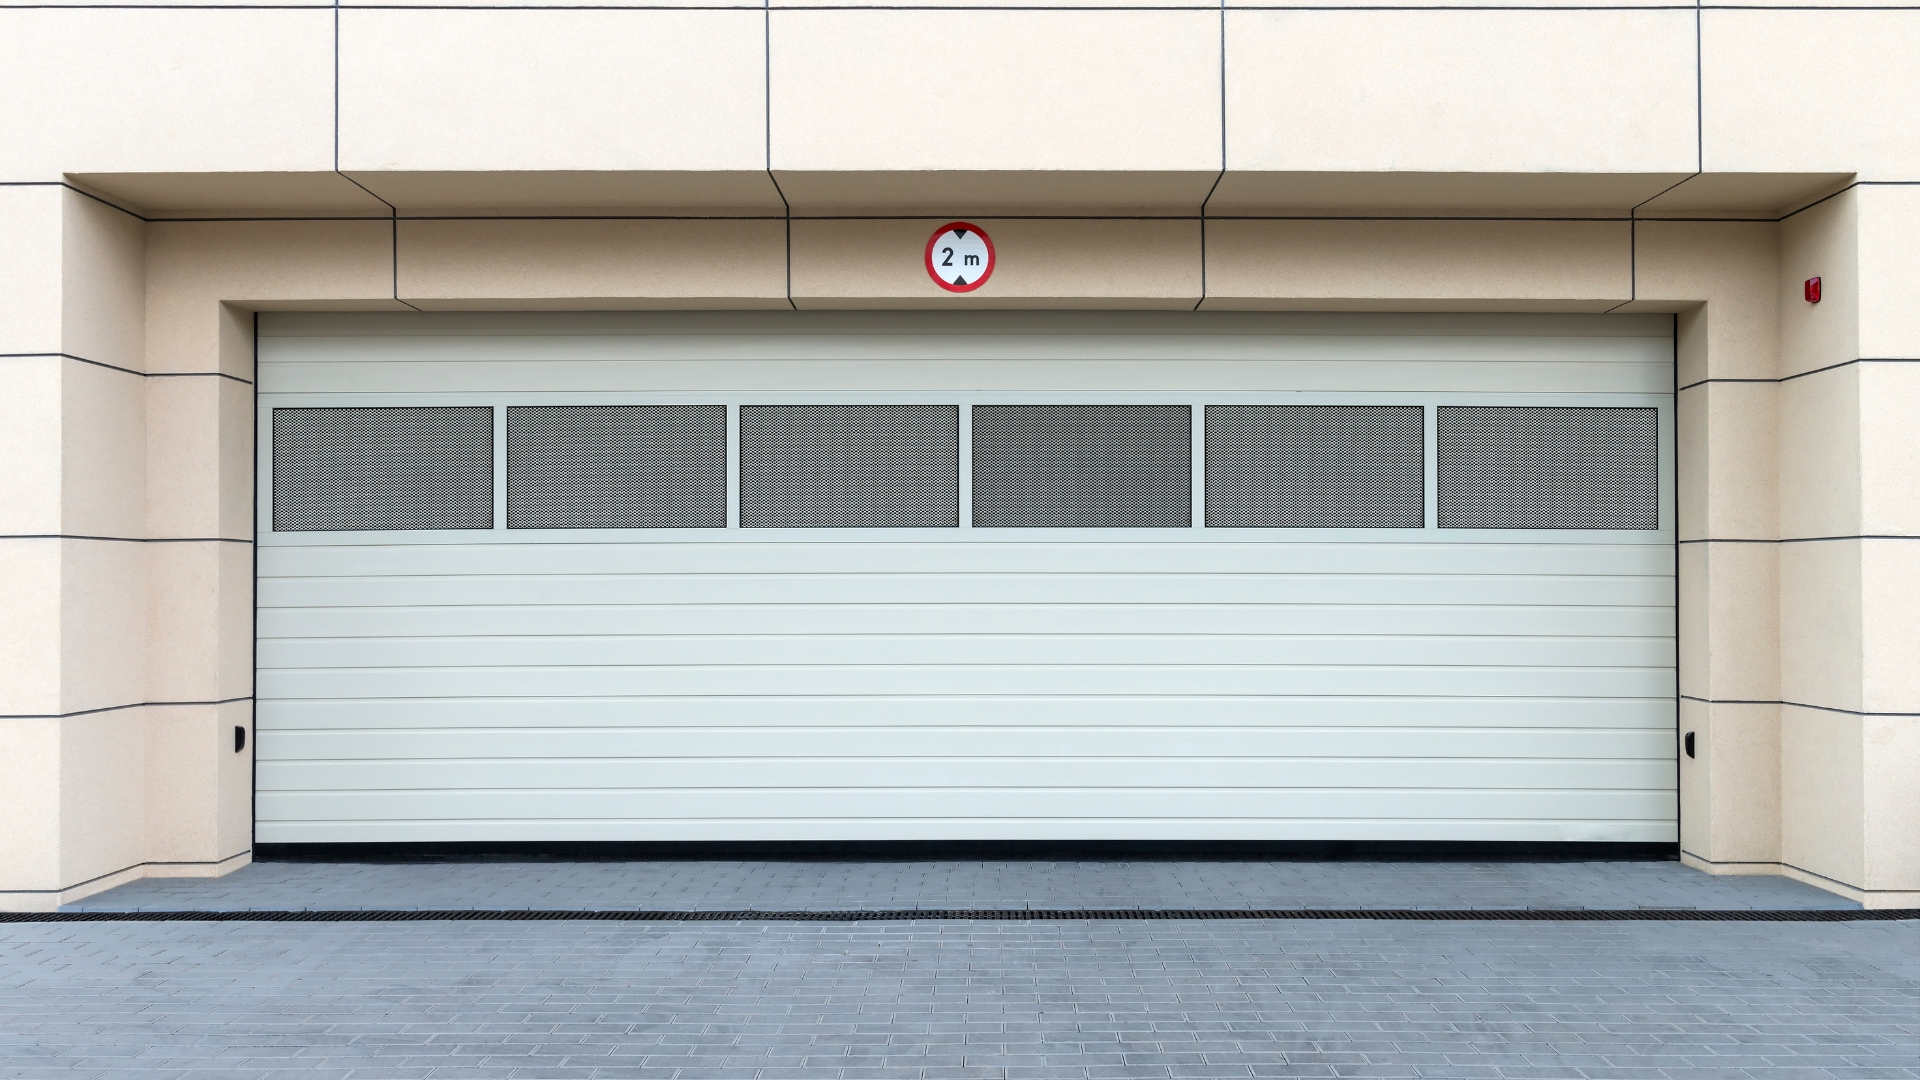 Commercial garage doors with windows